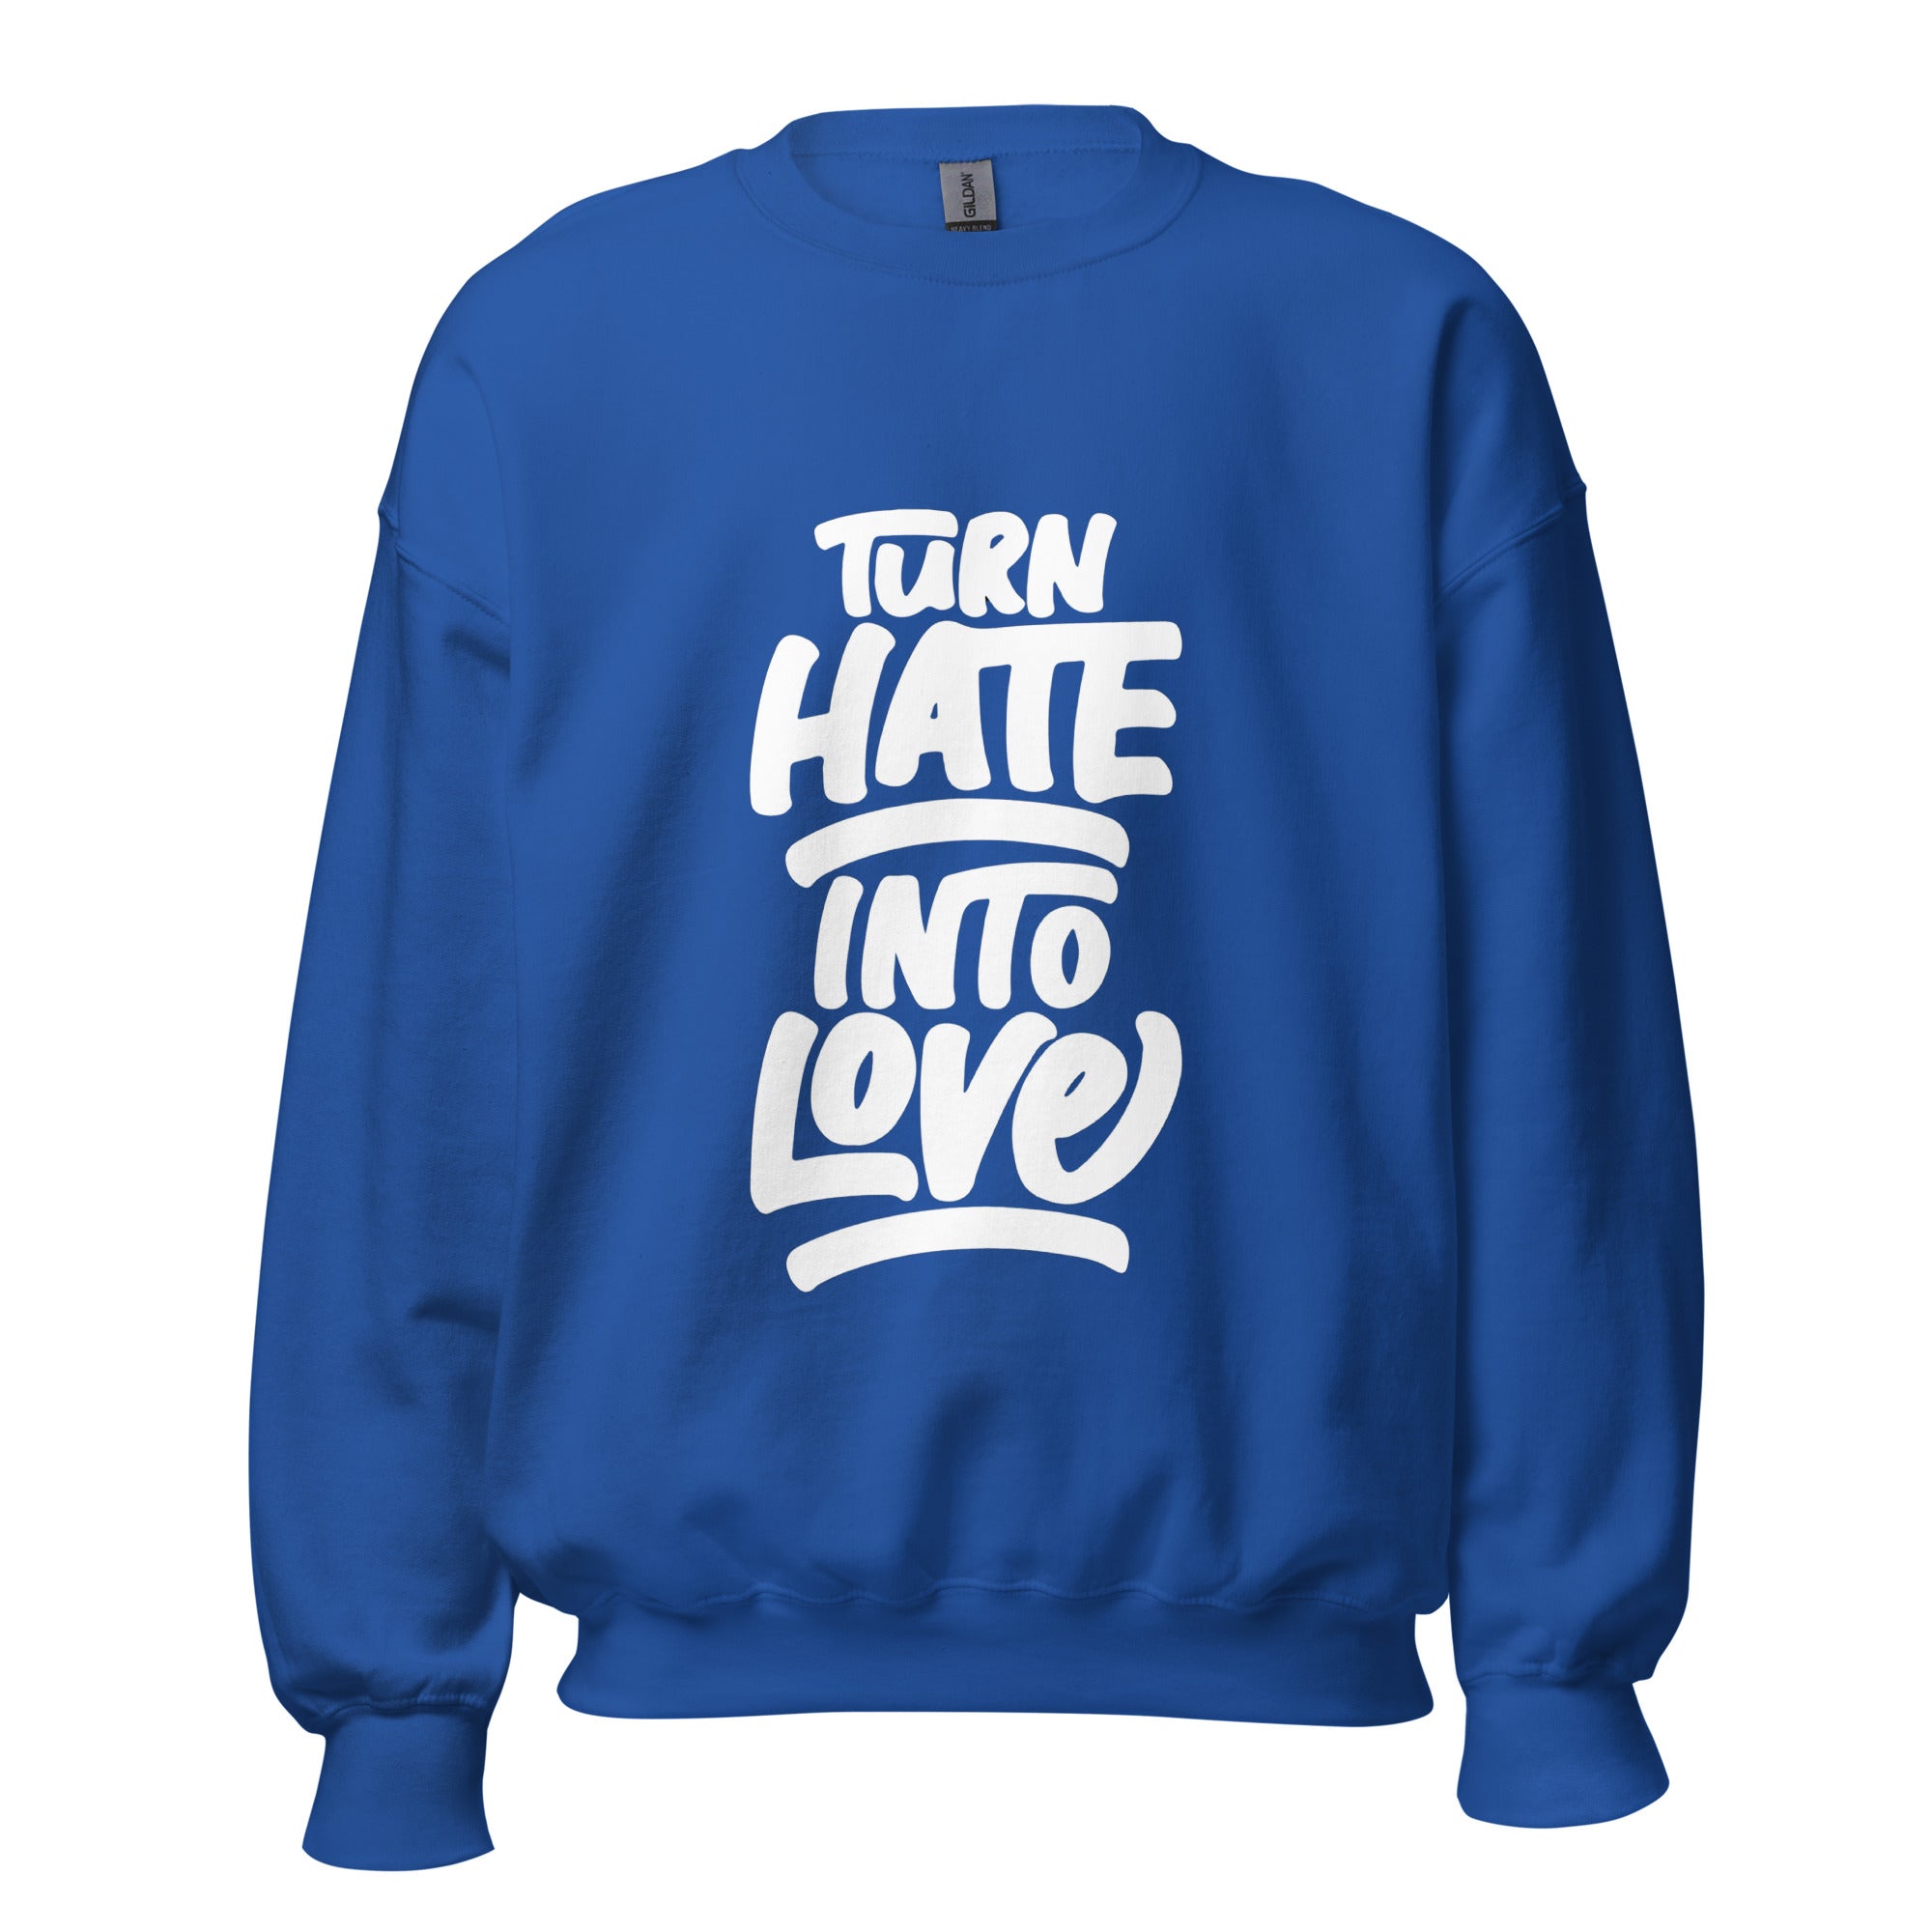 Love Sweatshirt for men